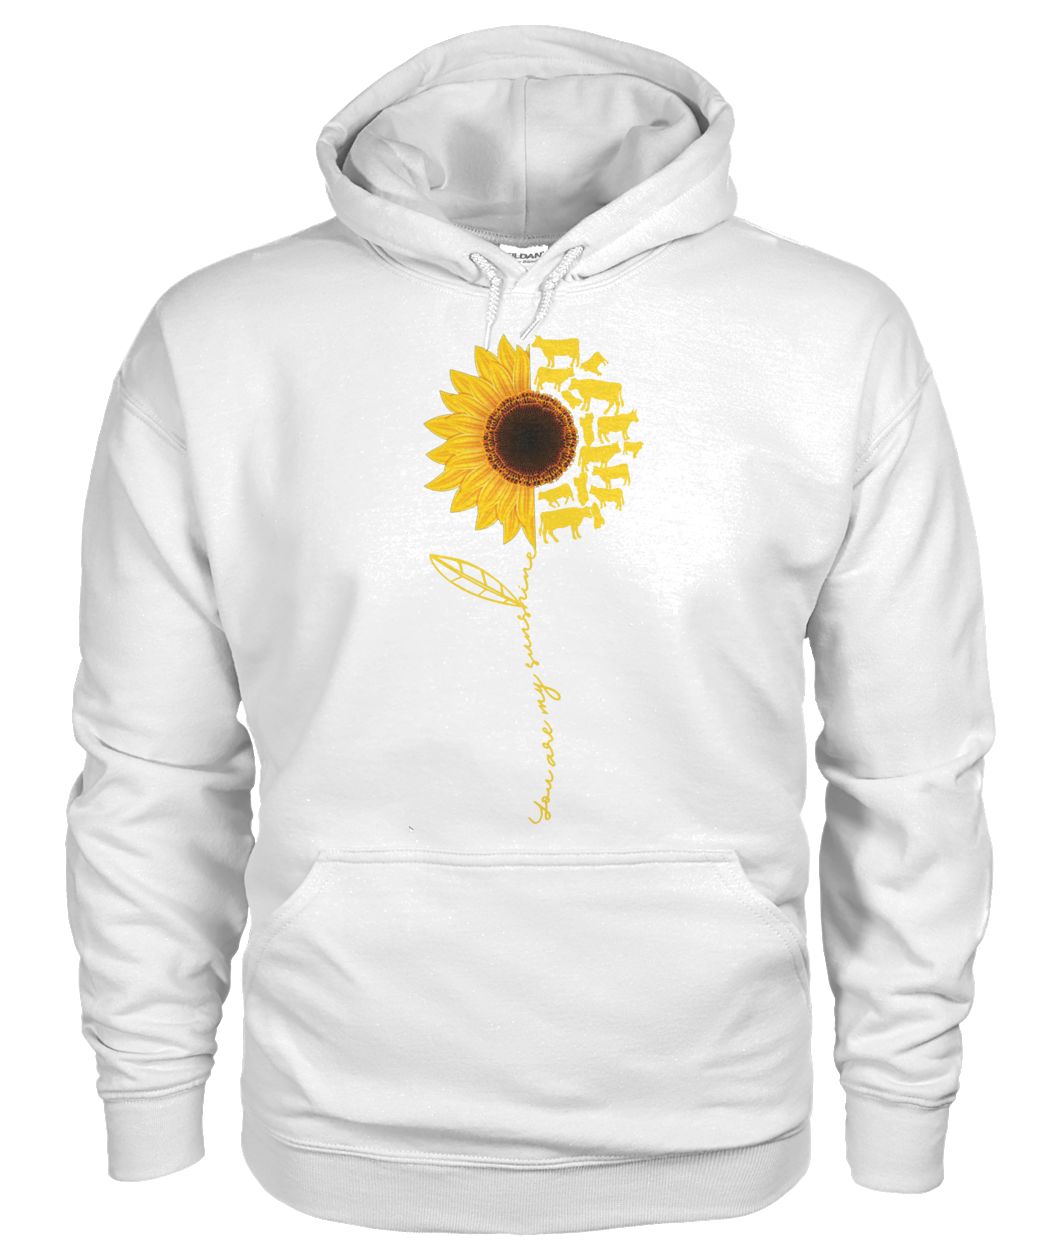 You are my sunshine sunflower cow gildan hoodie